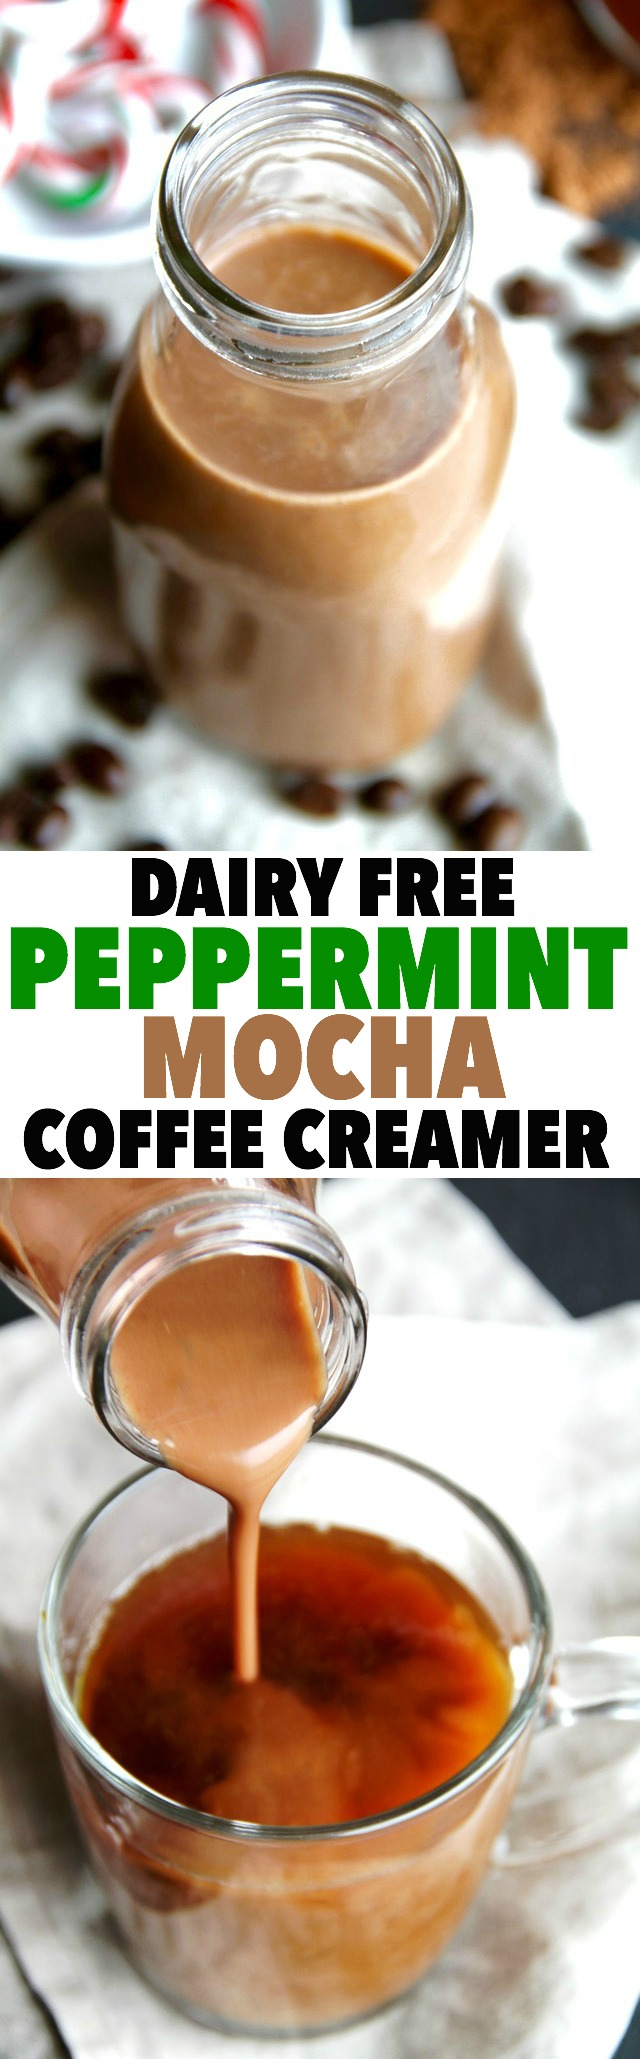 peppermint mocha sugar free coffee creamer